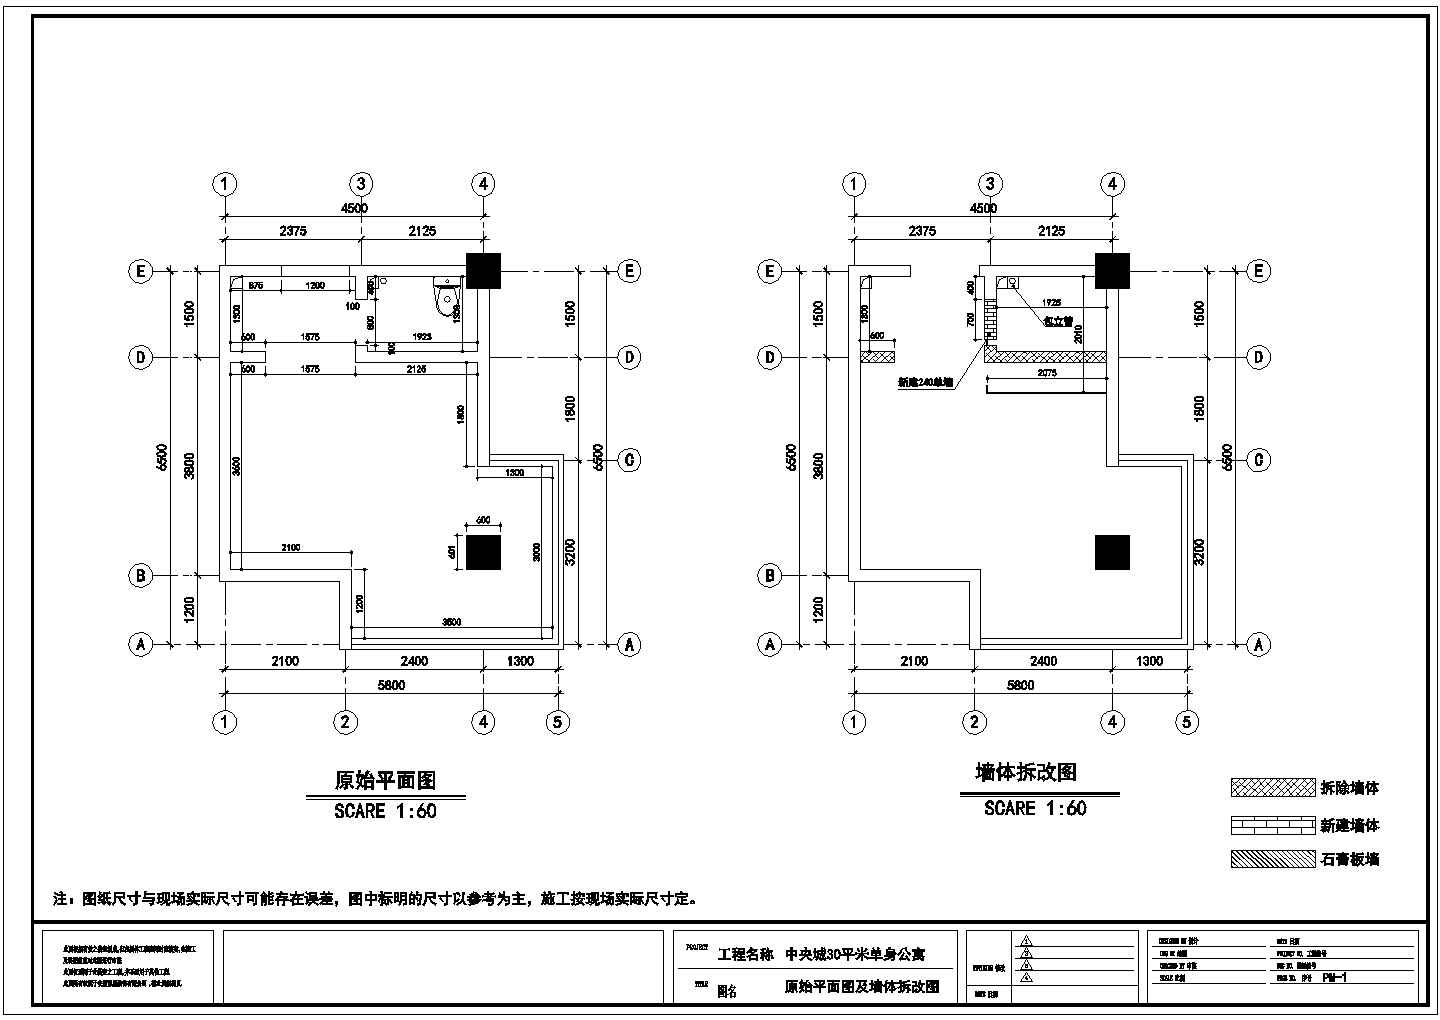 单身公寓结构设计及施工方案全套CAD图纸 